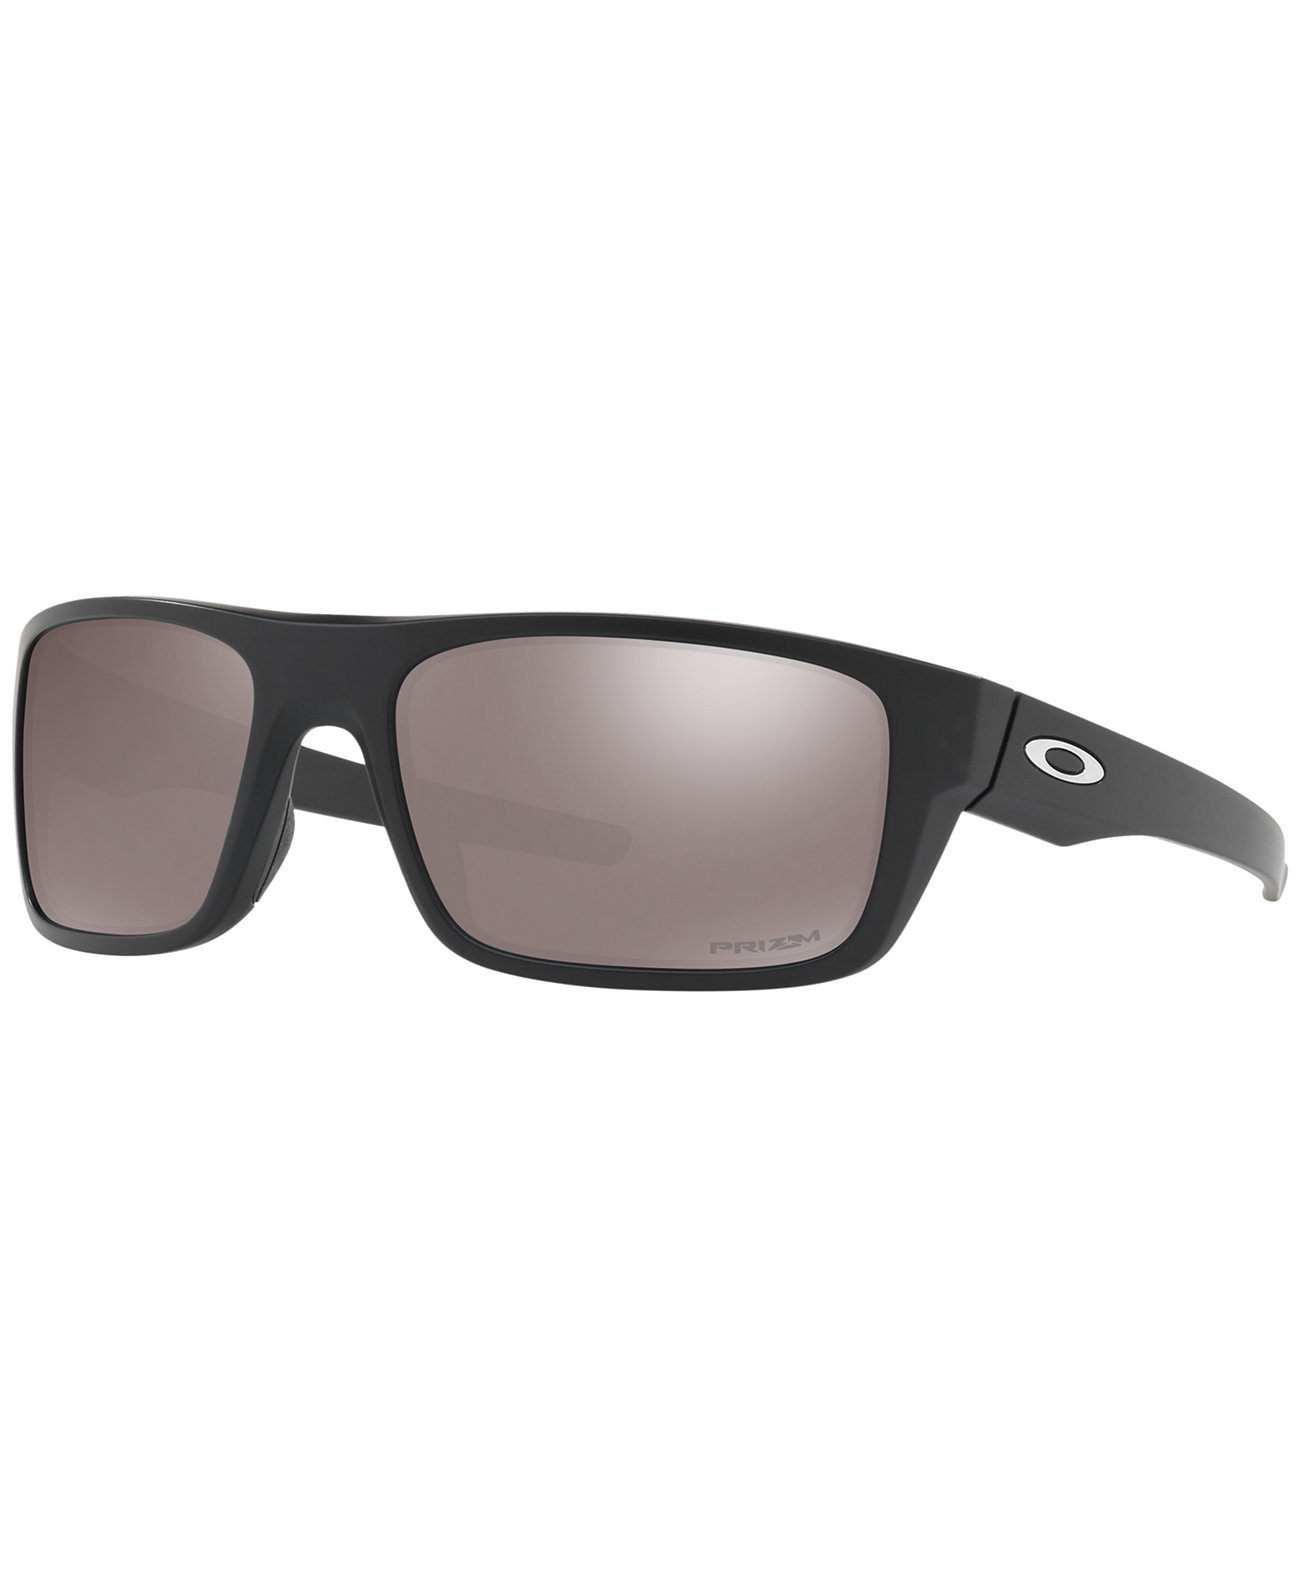 Поляризованные солнцезащитные очки Drop Point Prizm, OO9367 60 Oakley